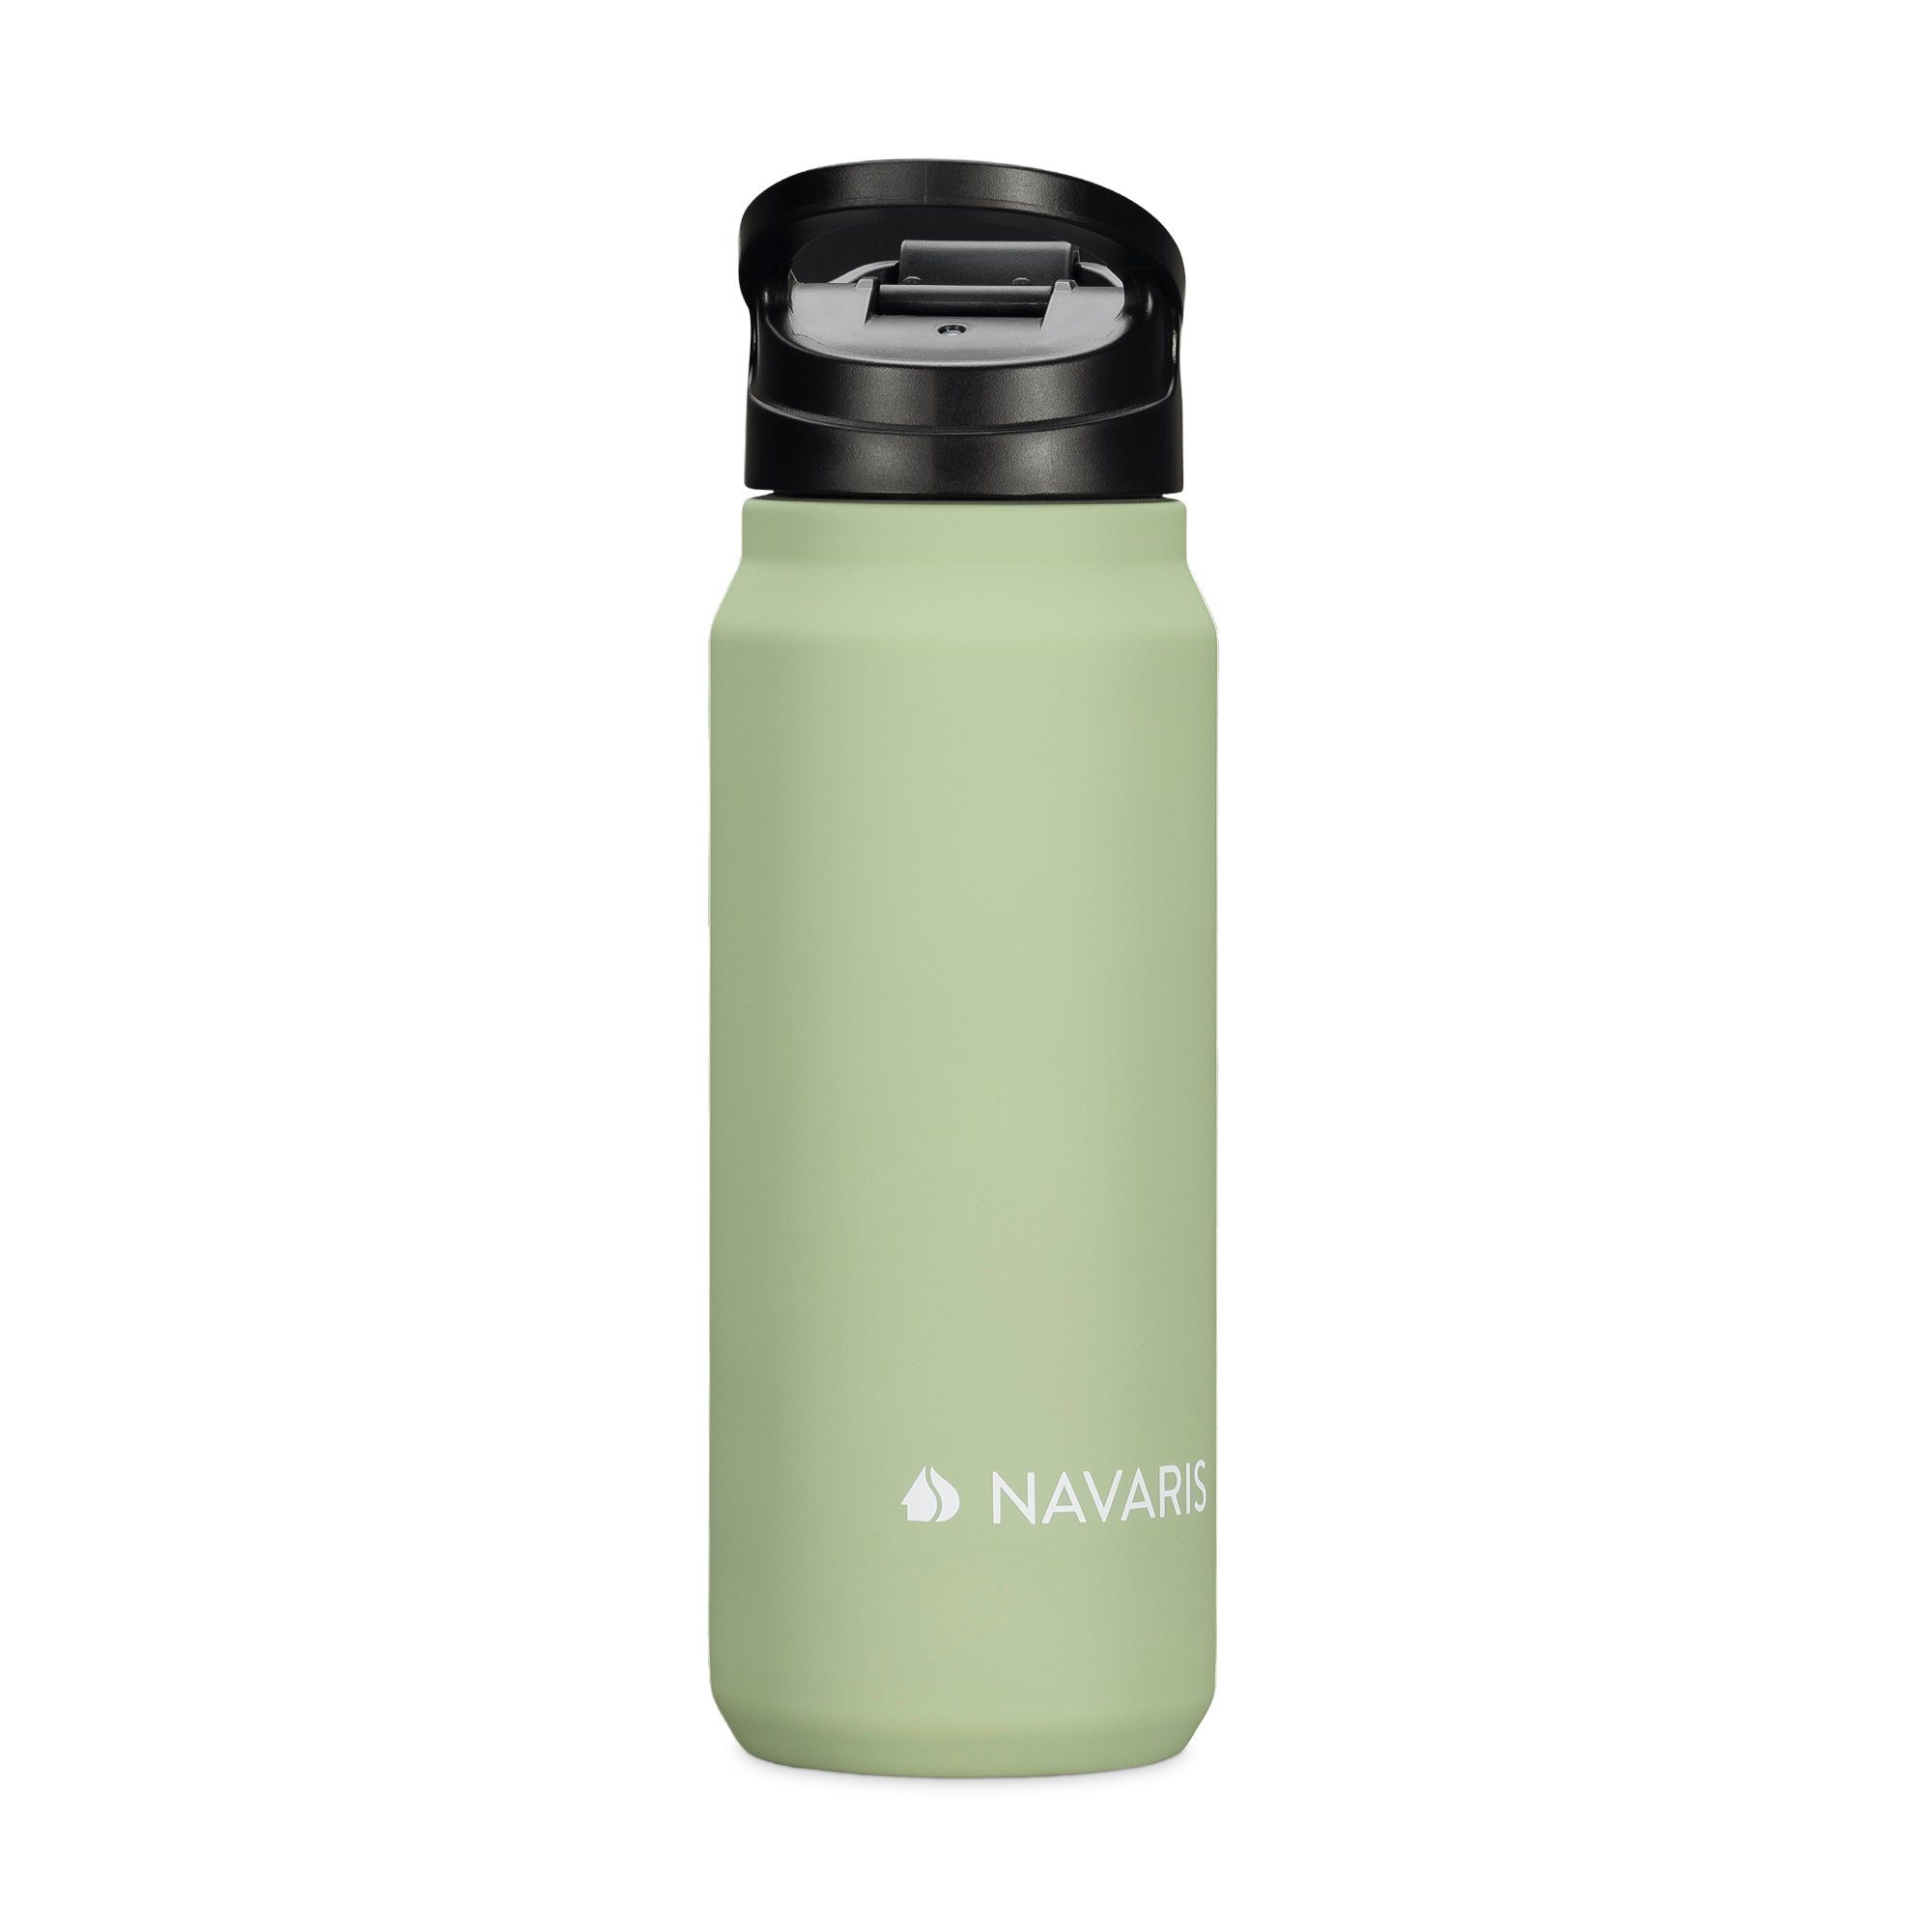 doppelwandig und Kunststoff Navaris 700ml Edelstahl Trinkflasche - Trinkflasche aus